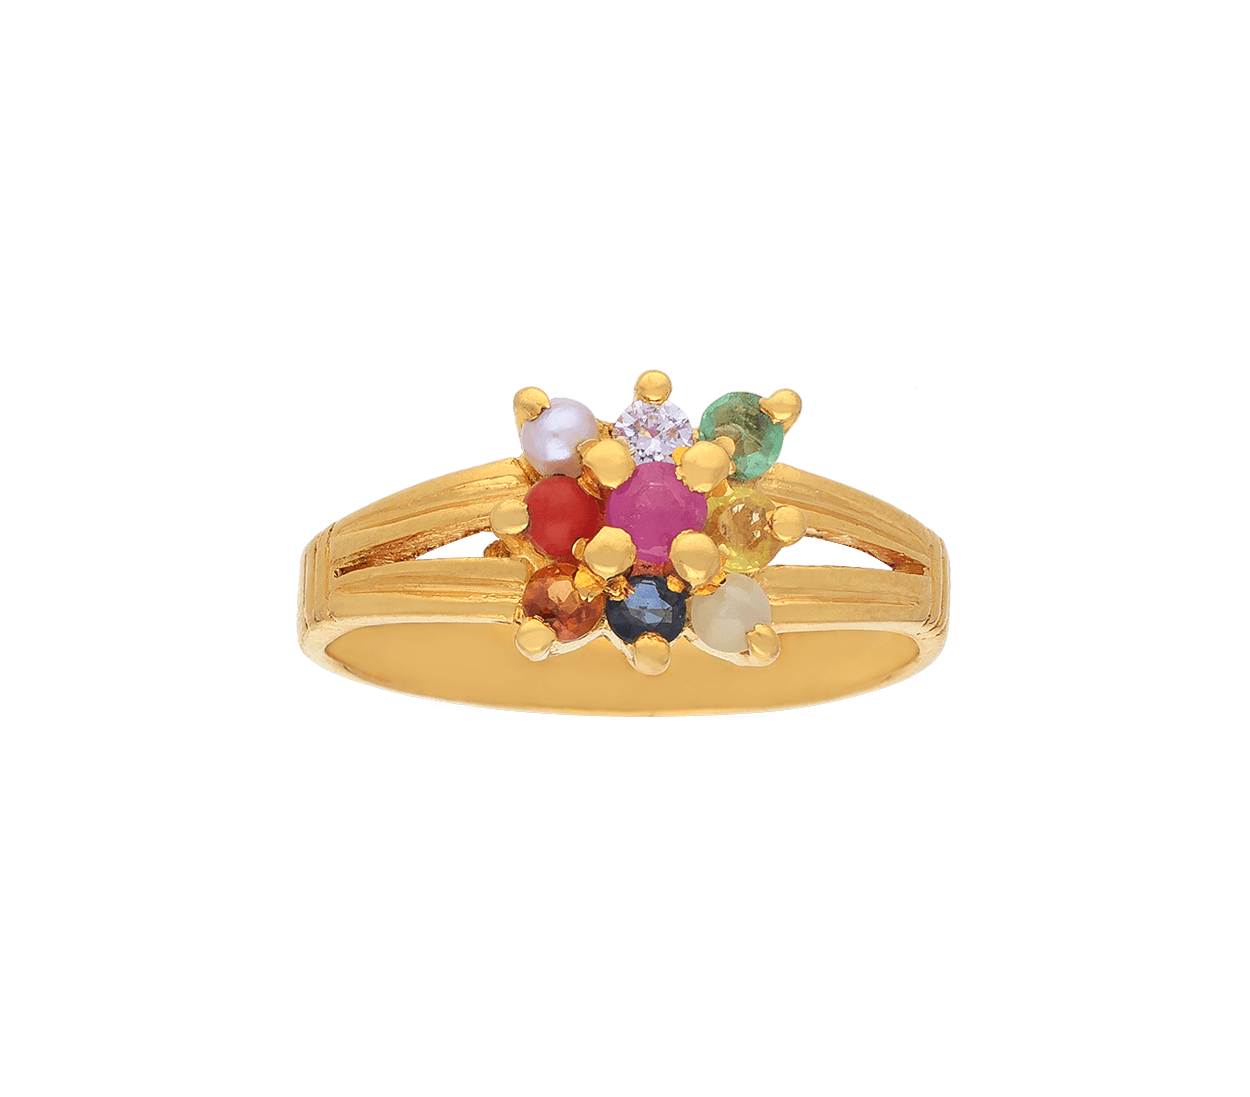 Buy CEYLONMINE Navratna Ring Stone Copper Plated Ring Copper Gold Plated  Ring Online at Best Prices in India - JioMart.